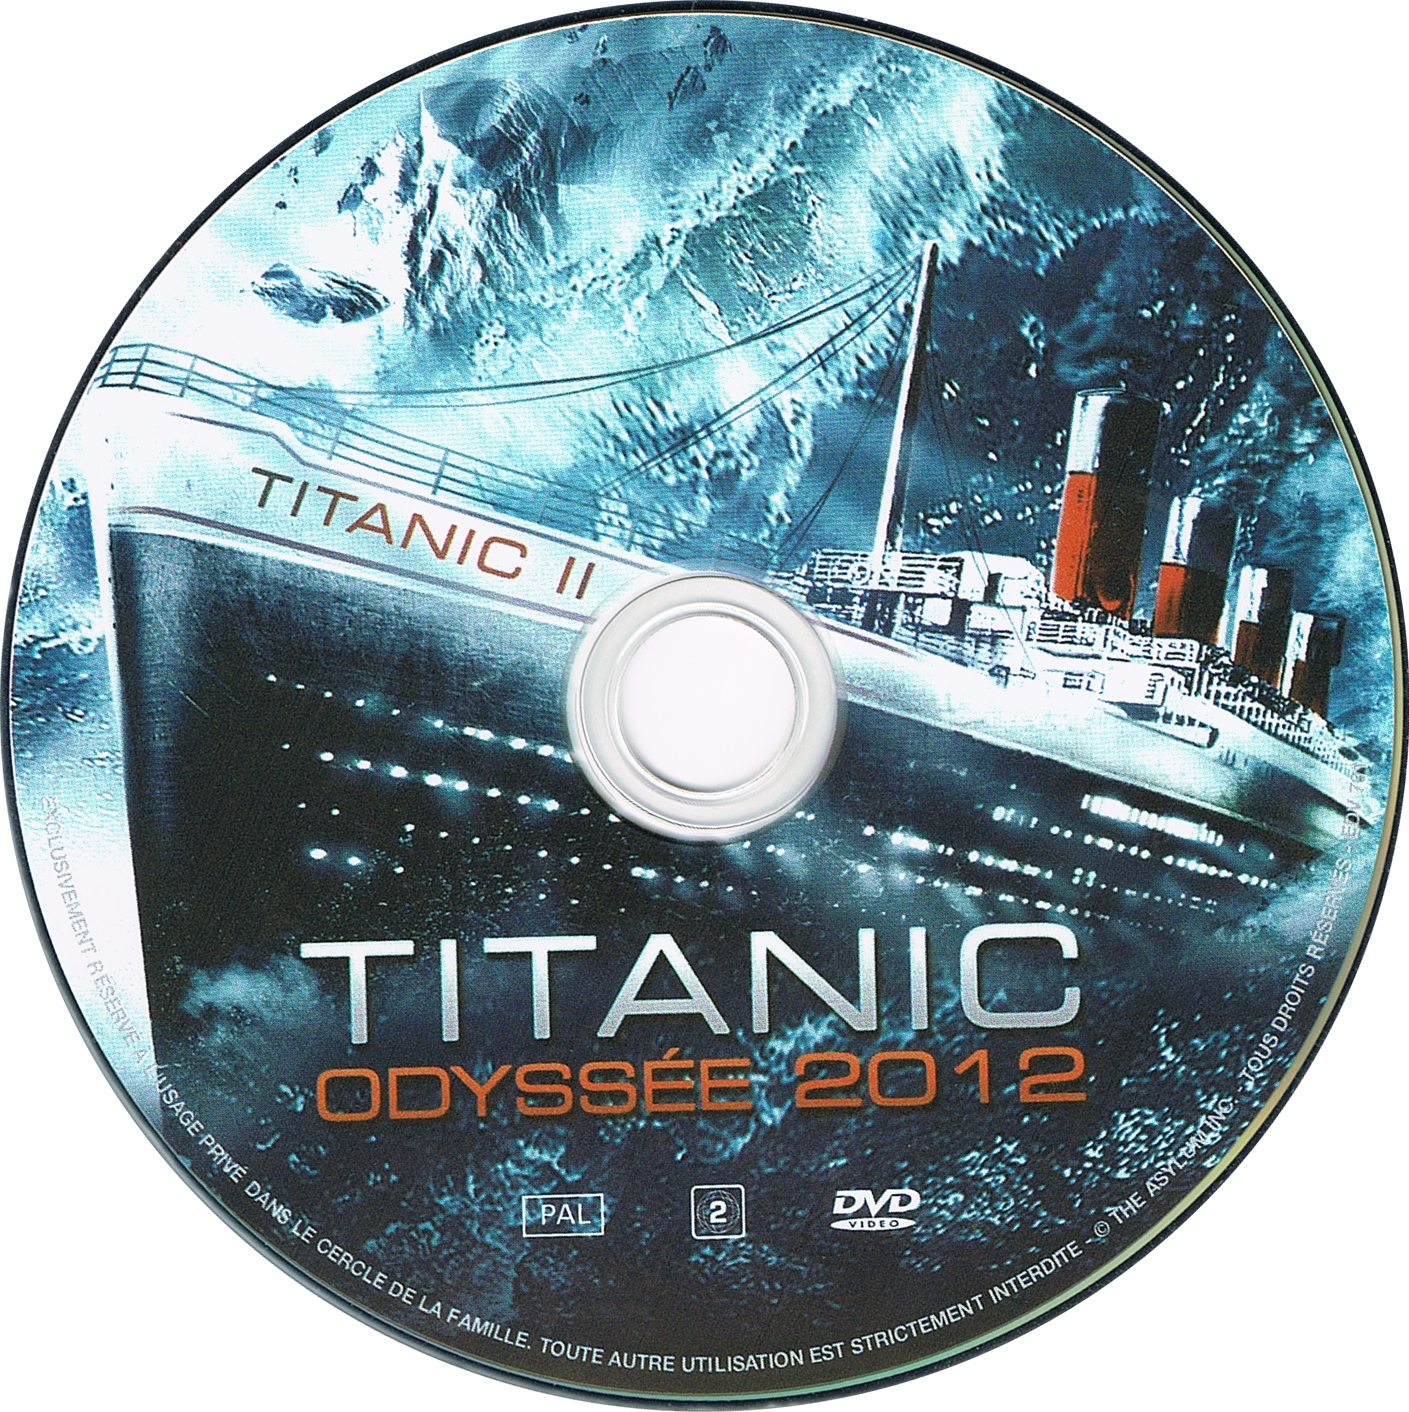 Titanic : Odysse 2012